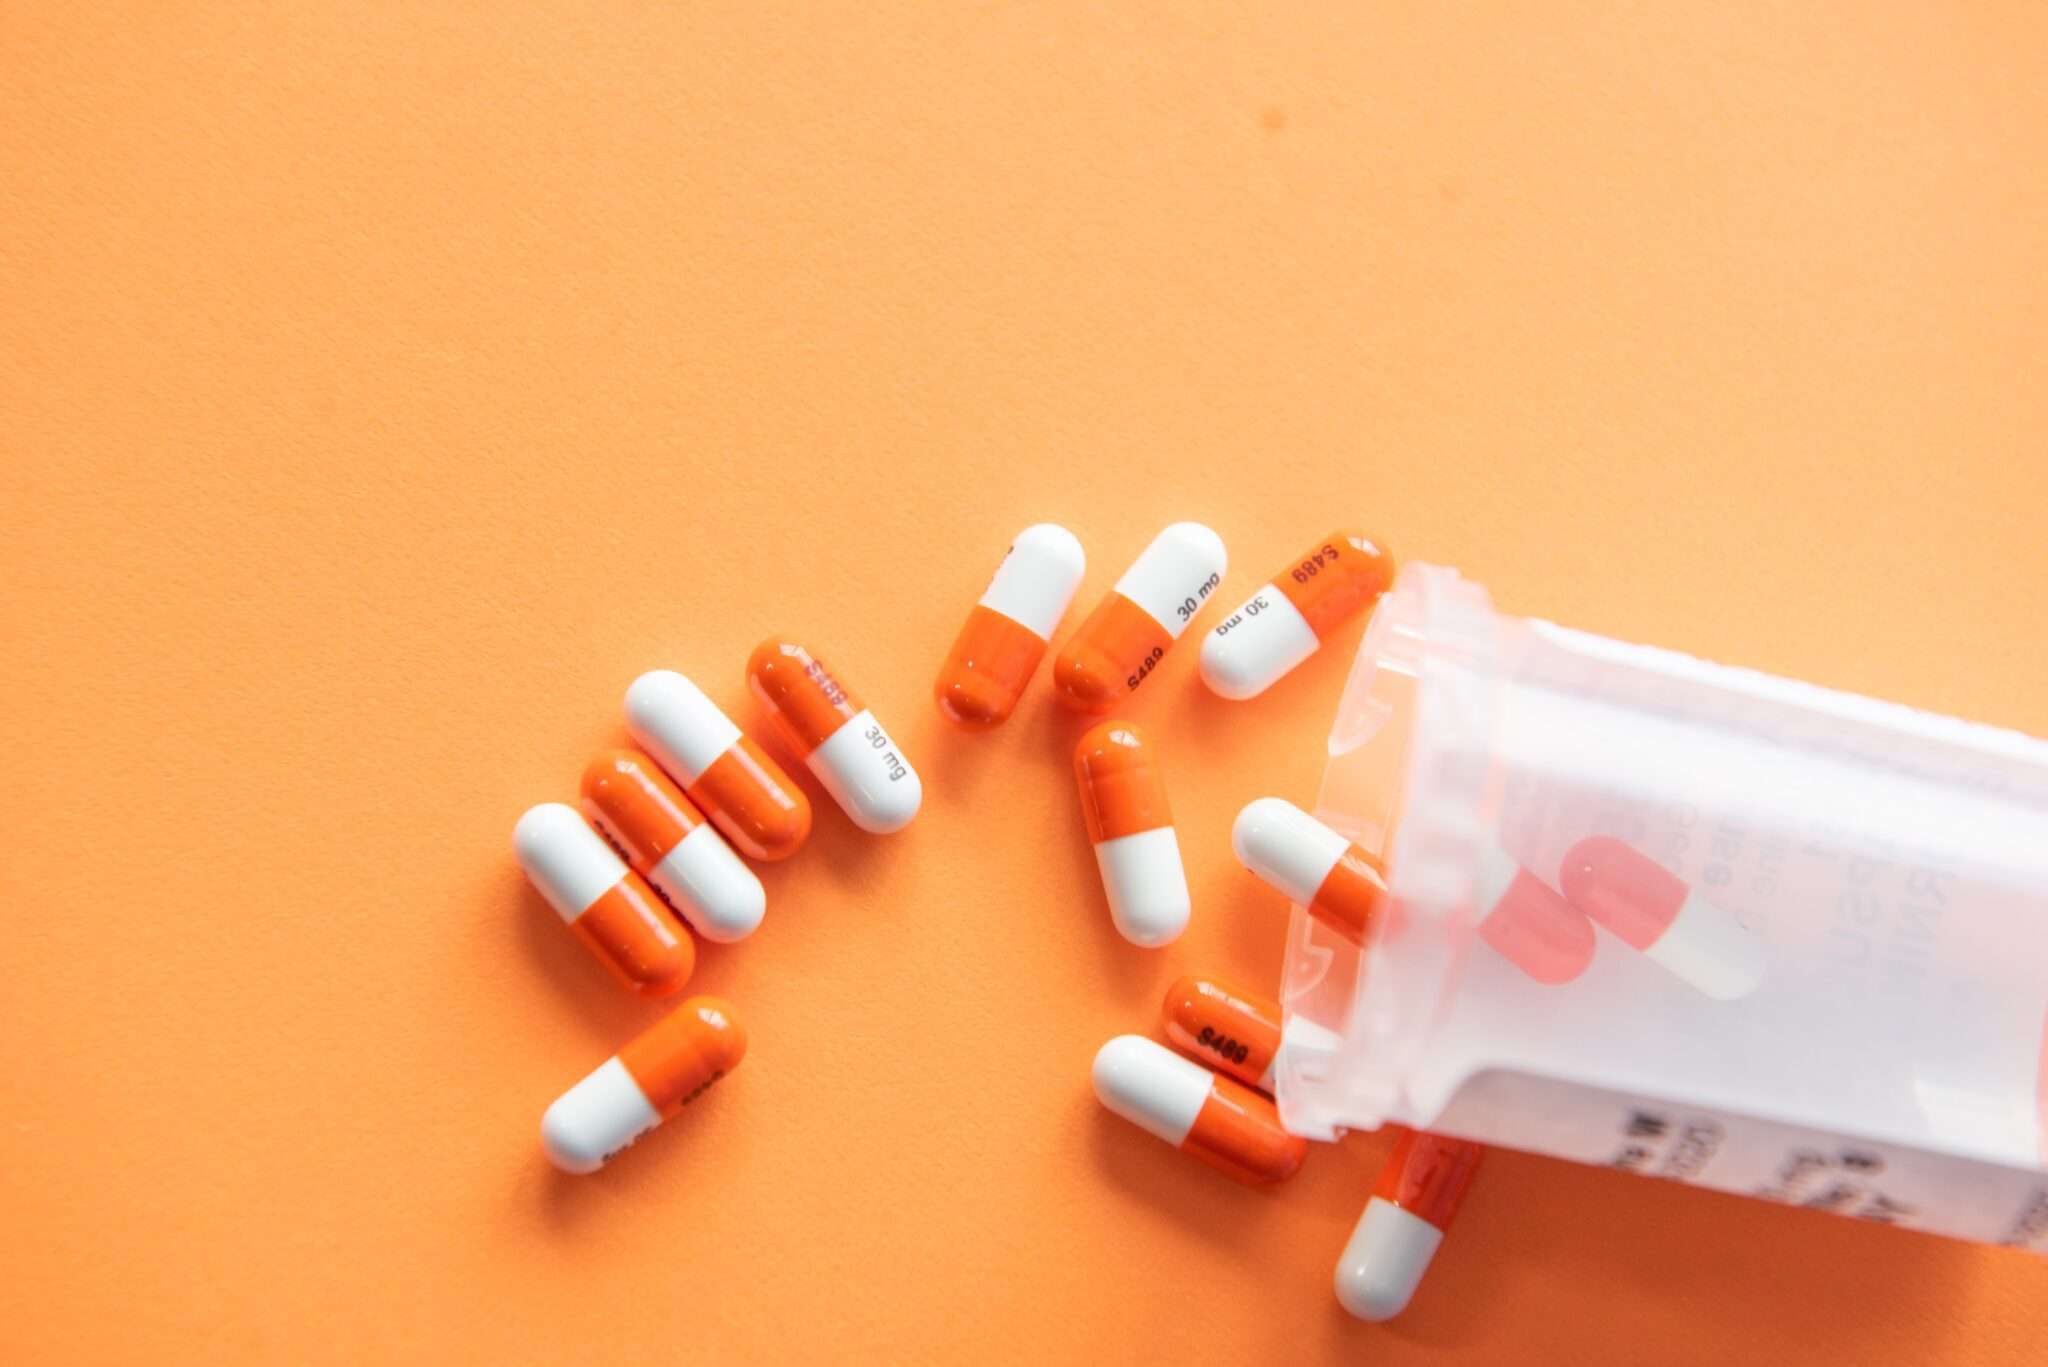 Τα Αντιβιοτικά μπορεί να μειώσουν τα συμπτώματα της ενδομητρίωσης?